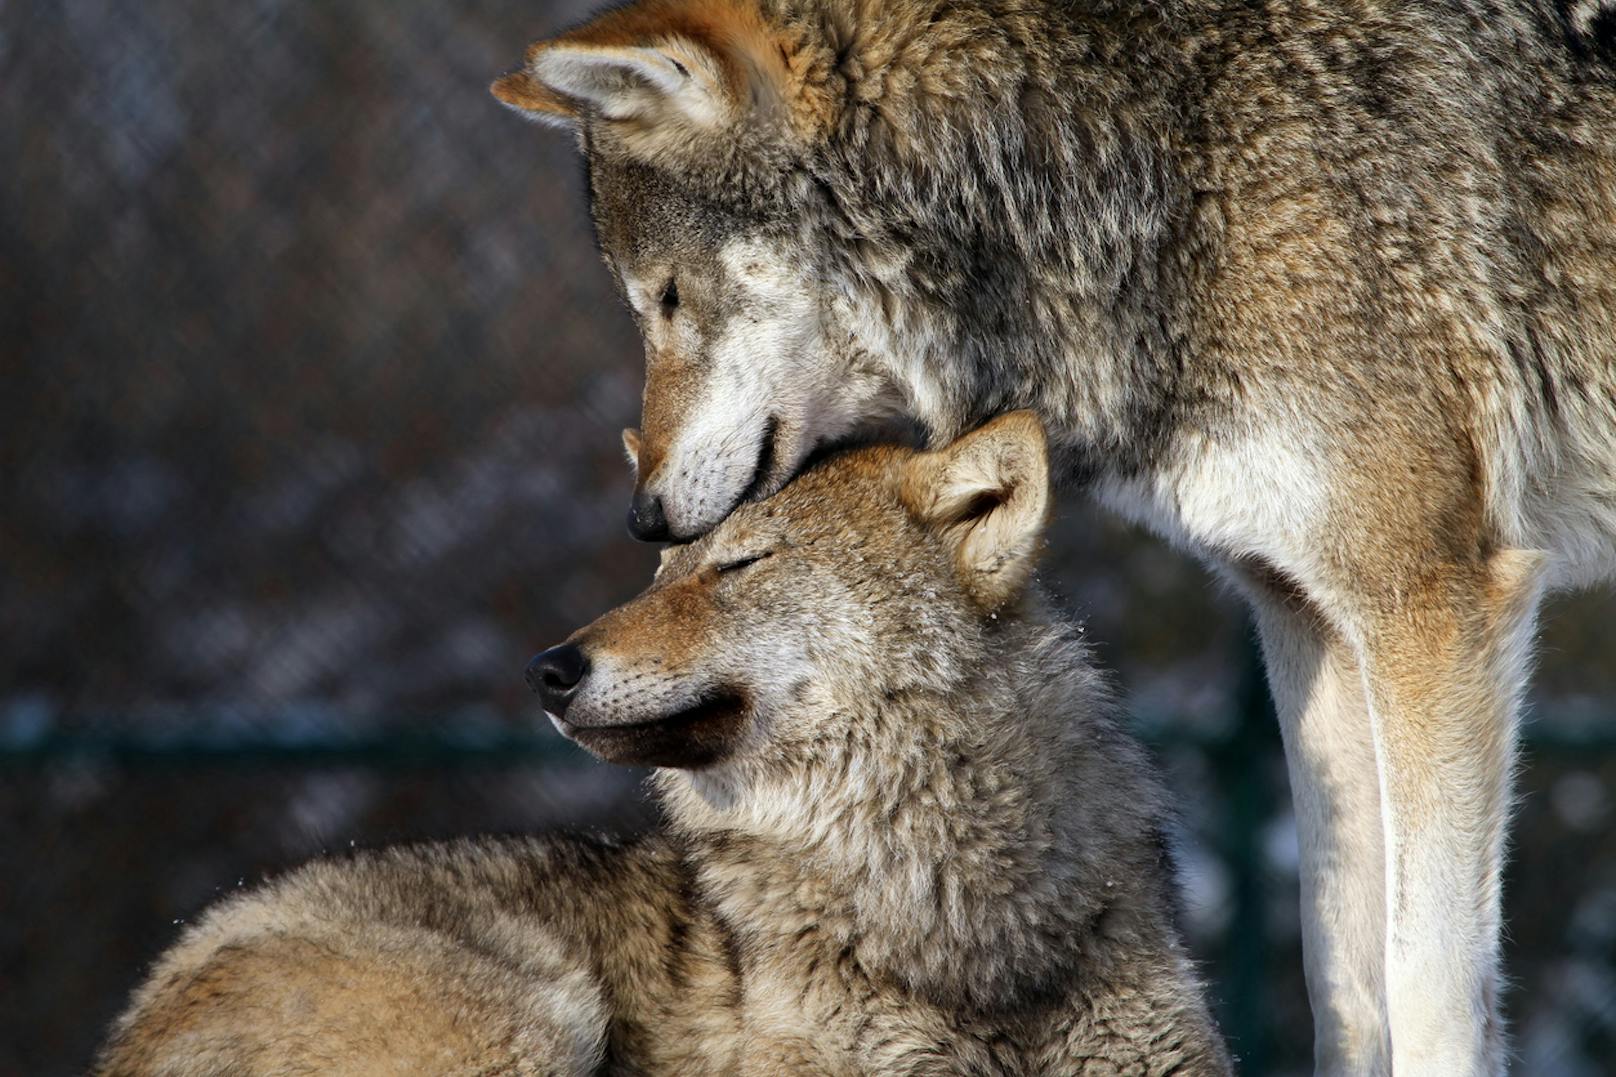 <strong>Wölfe. </strong>Vor 100 Jahren wurden Wölfe in Österreich ausgerottet. Heute sind sie europaweit streng geschützt und kehren auf natürliche Weise langsam wieder in den Alpenraum zurück. Lediglich 30 bis 35 Individuen gibt es in Österreich. Doch obwohl von der Art keine Gefahr für den Menschen ausgeht und Nutztiere durch Zäune oder Hunde geschützt werden können, wollen ihr manche erneut an den Kragen. <strong>Im letzten Jahr wurde ein Wolf in Tirol illegal geschossen und sogar enthauptet aufgefunden. In Niederösterreich ist ein ganzes Rudel verschwunden.</strong>